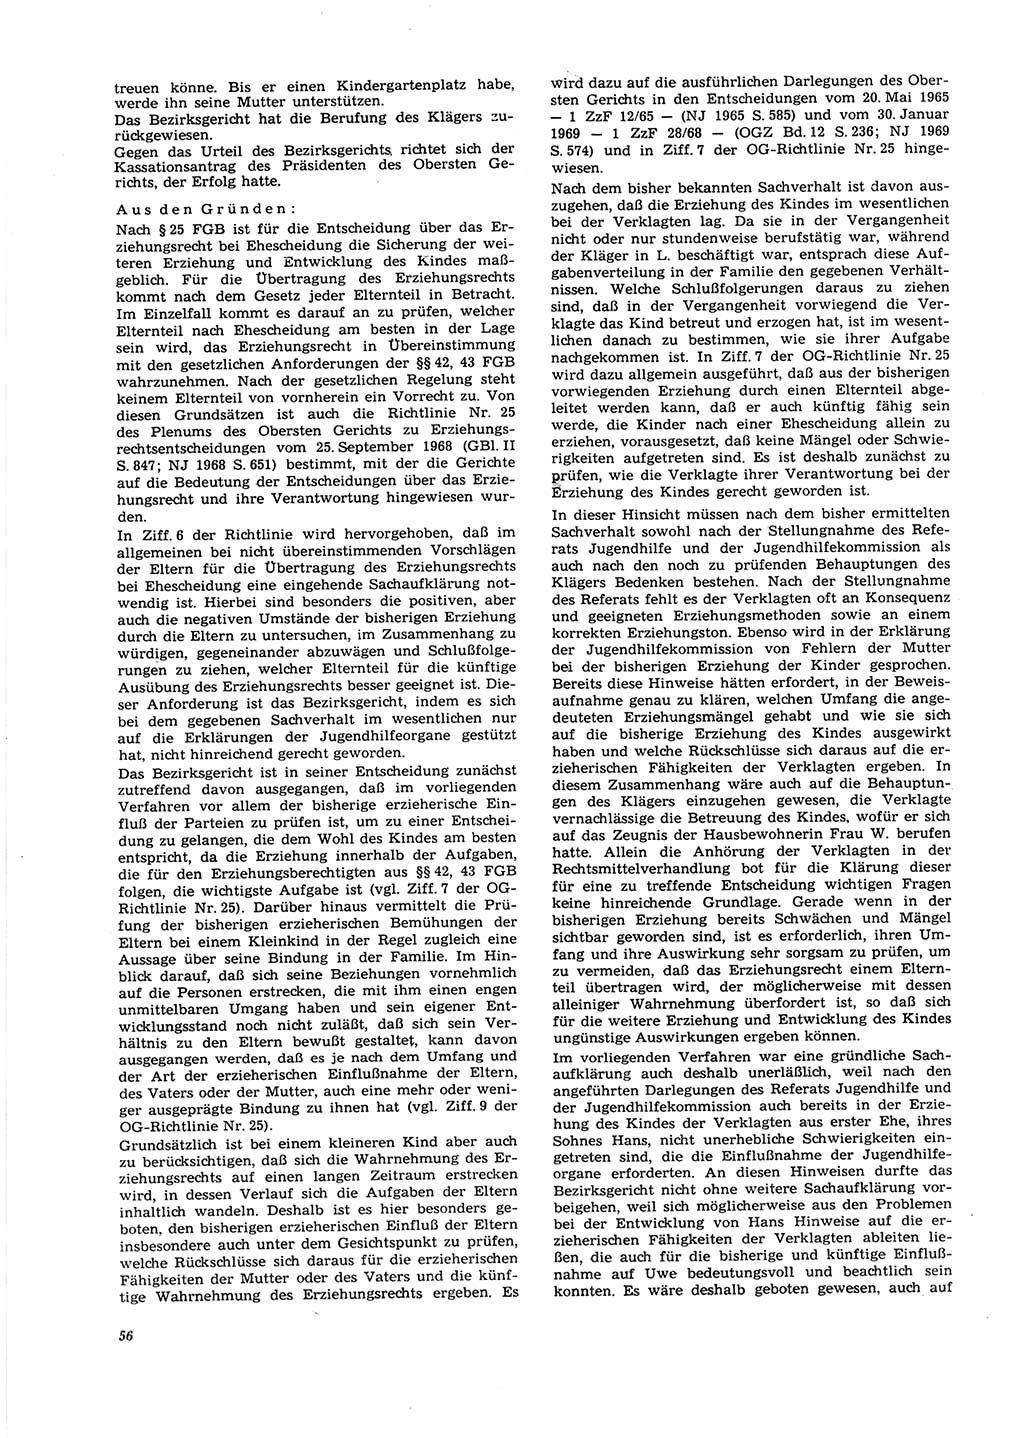 Neue Justiz (NJ), Zeitschrift für Recht und Rechtswissenschaft [Deutsche Demokratische Republik (DDR)], 27. Jahrgang 1973, Seite 56 (NJ DDR 1973, S. 56)